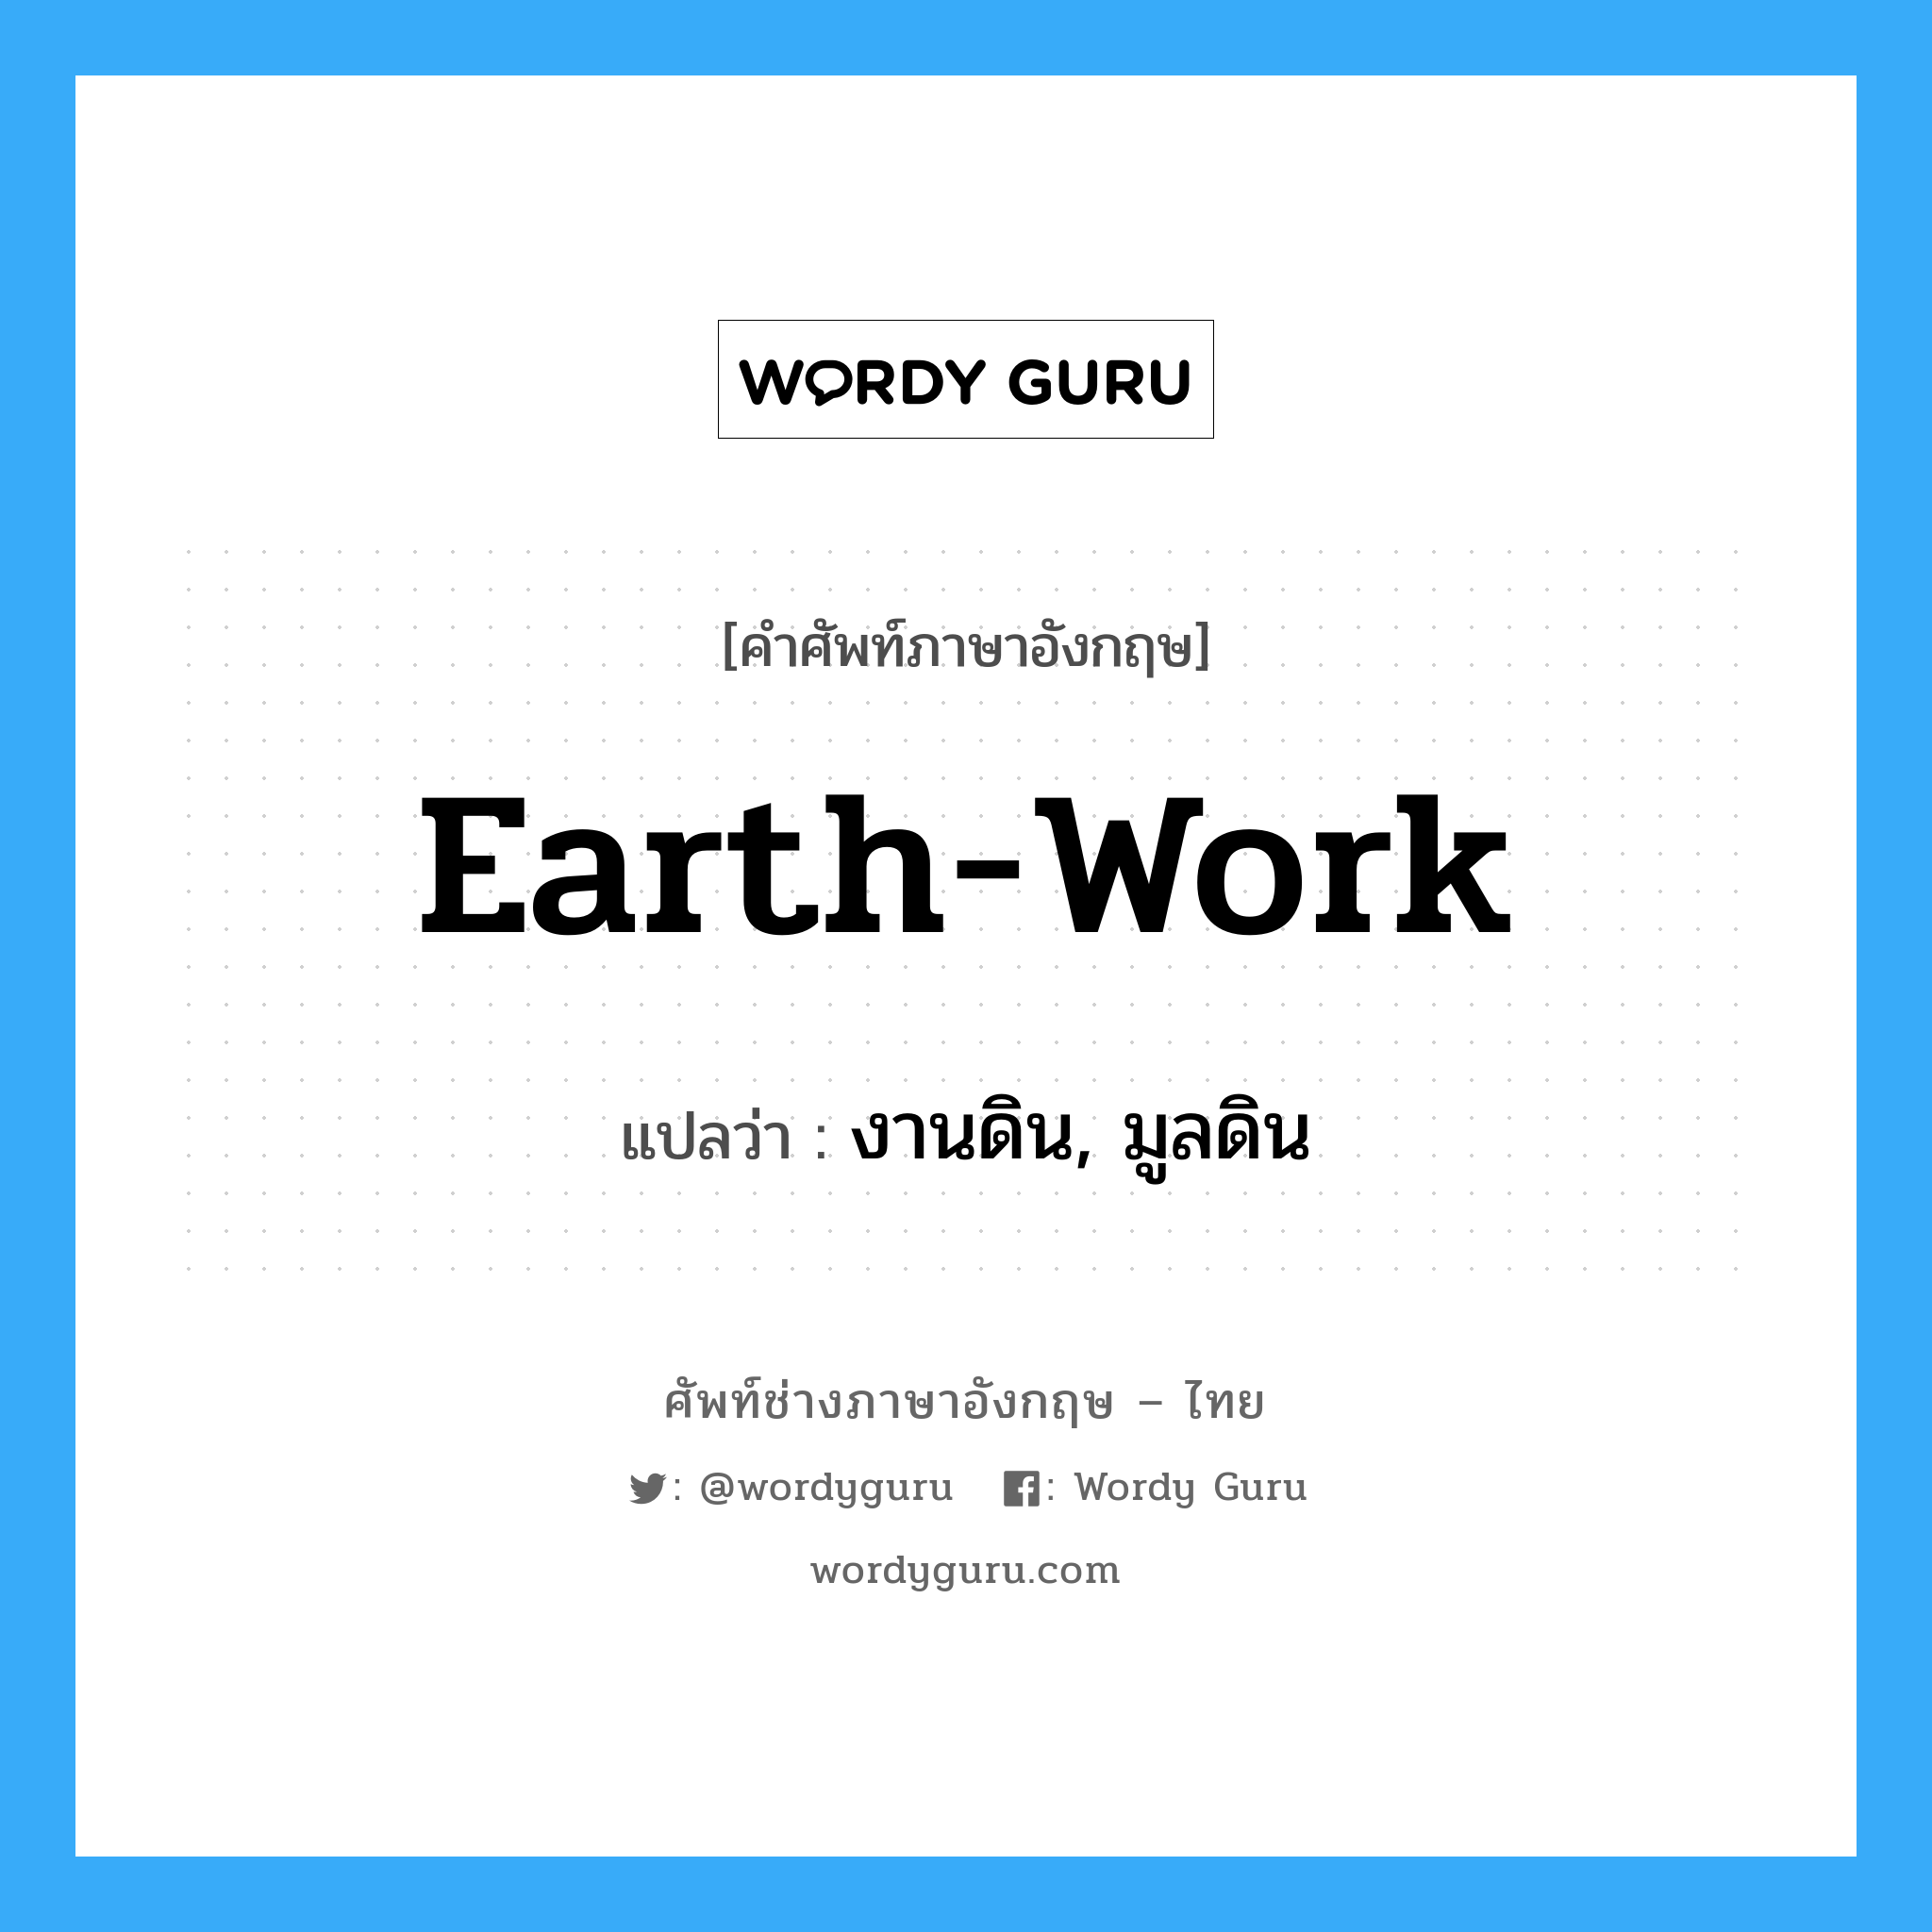 earth-work แปลว่า?, คำศัพท์ช่างภาษาอังกฤษ - ไทย earth-work คำศัพท์ภาษาอังกฤษ earth-work แปลว่า งานดิน, มูลดิน